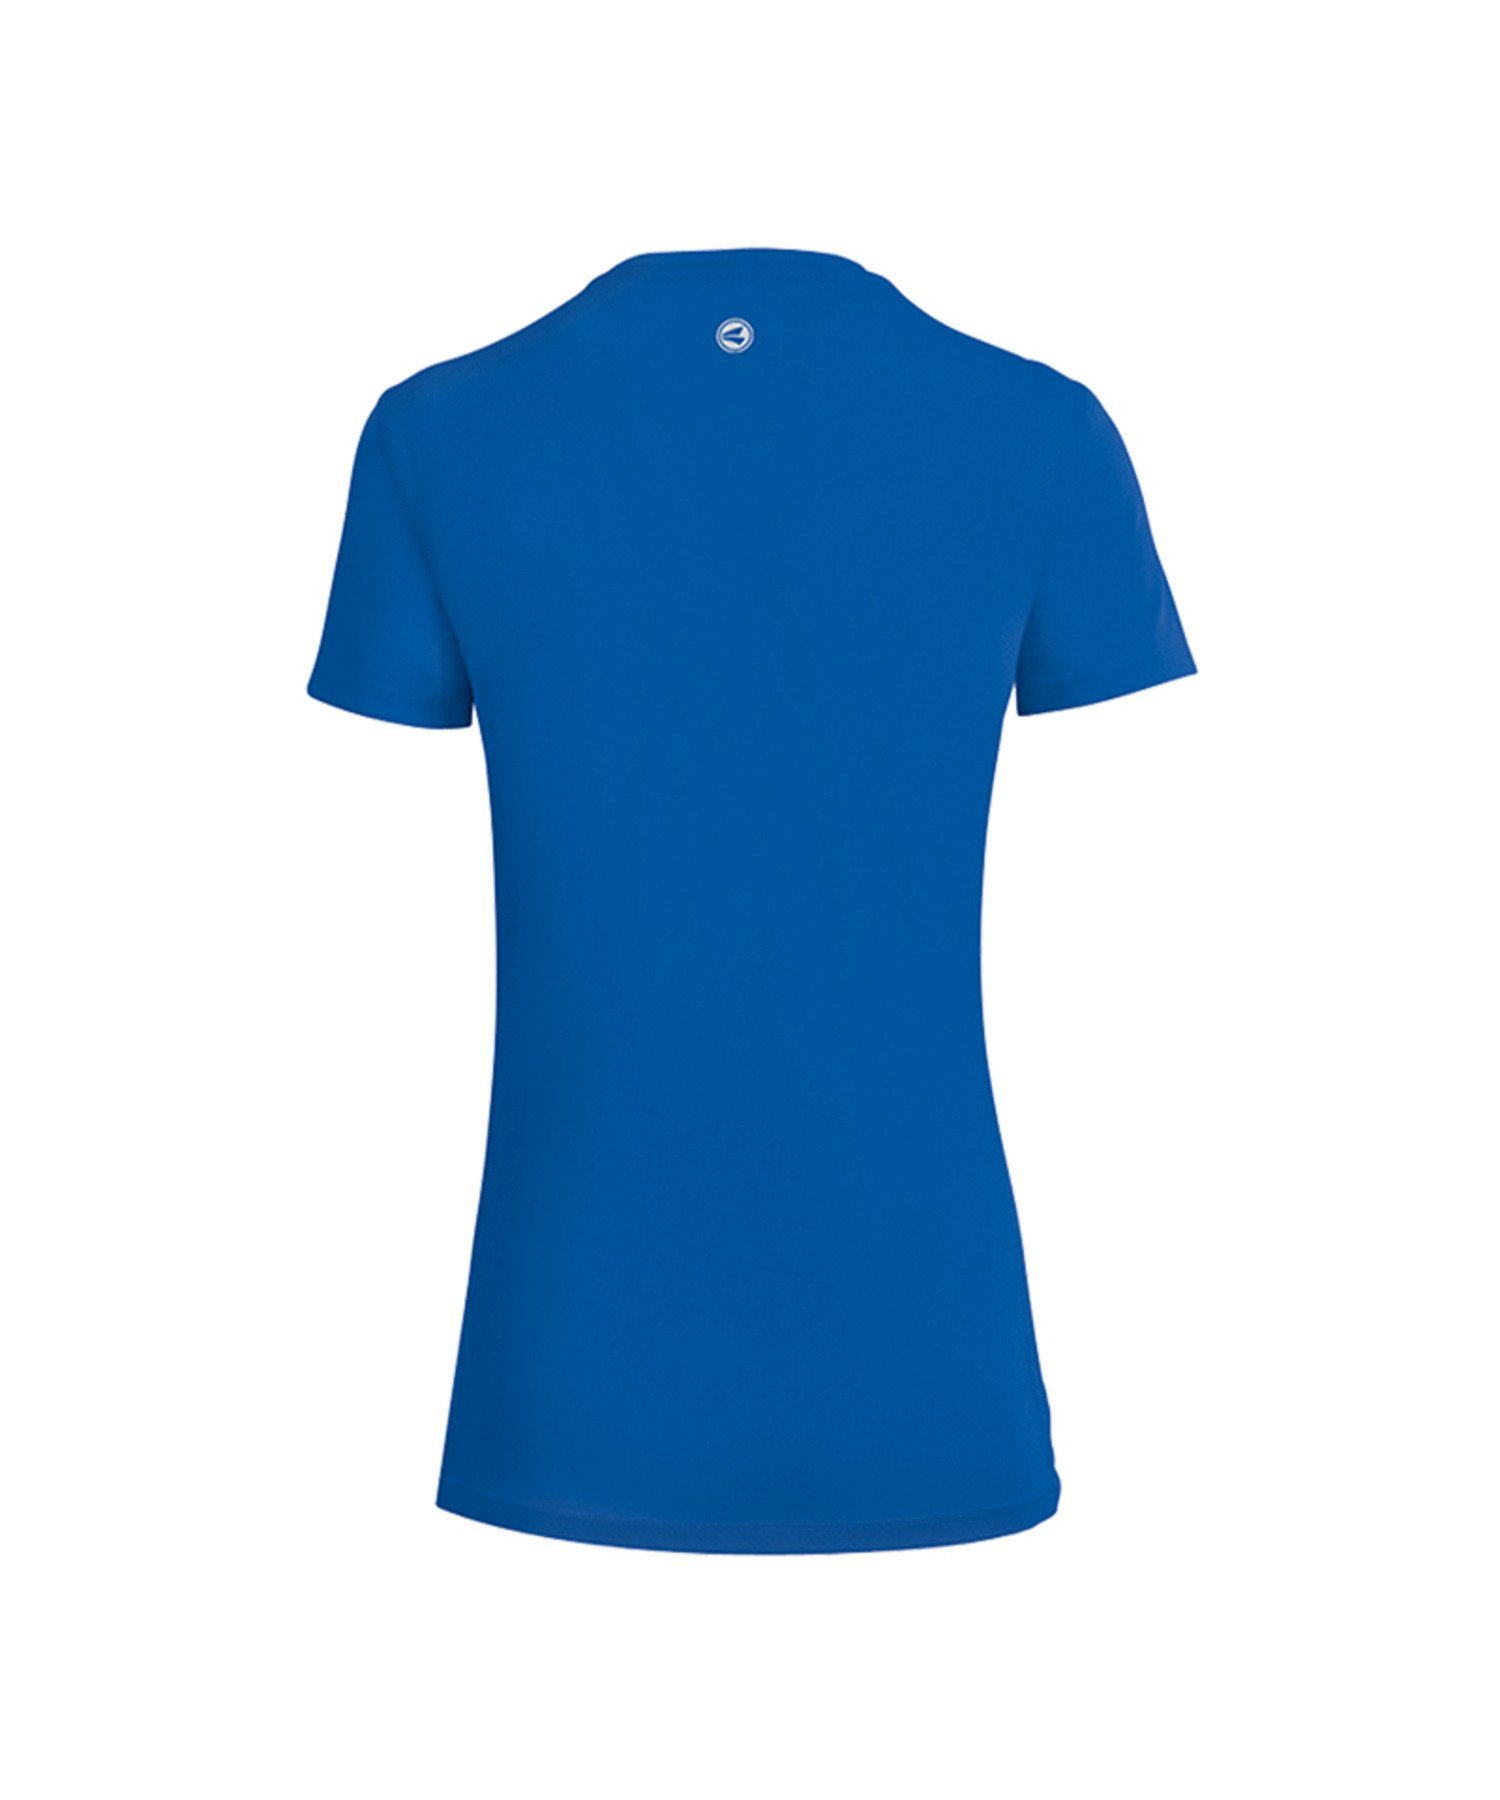 Running Blau 2.0 T-Shirt default Run Laufshirt Jako Damen